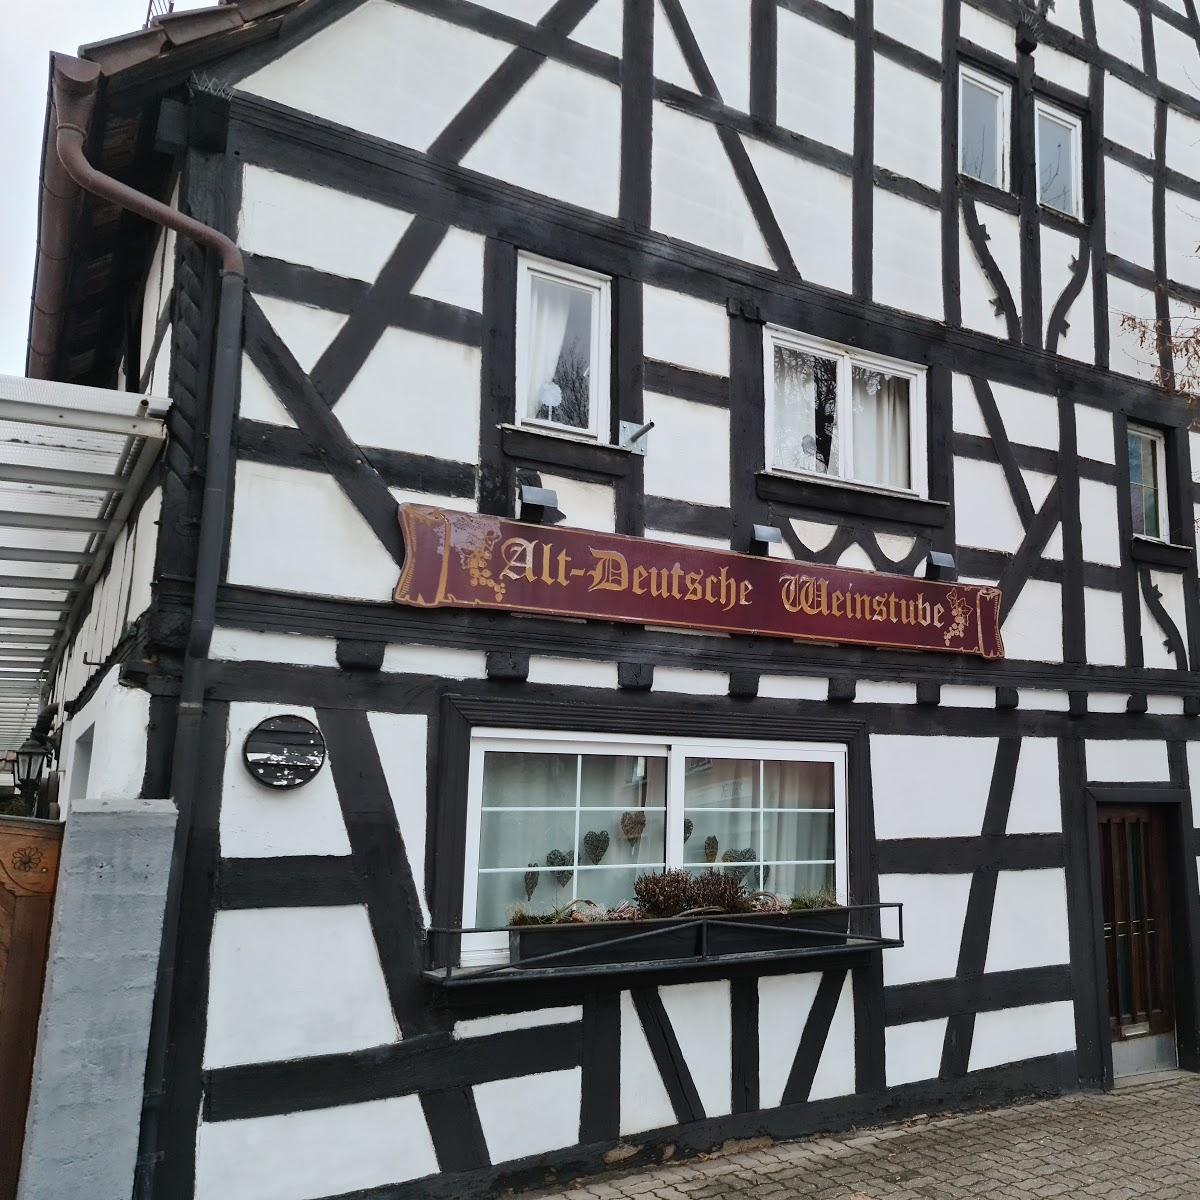 Restaurant "Altdeutsche Weinstube" in Waghäusel